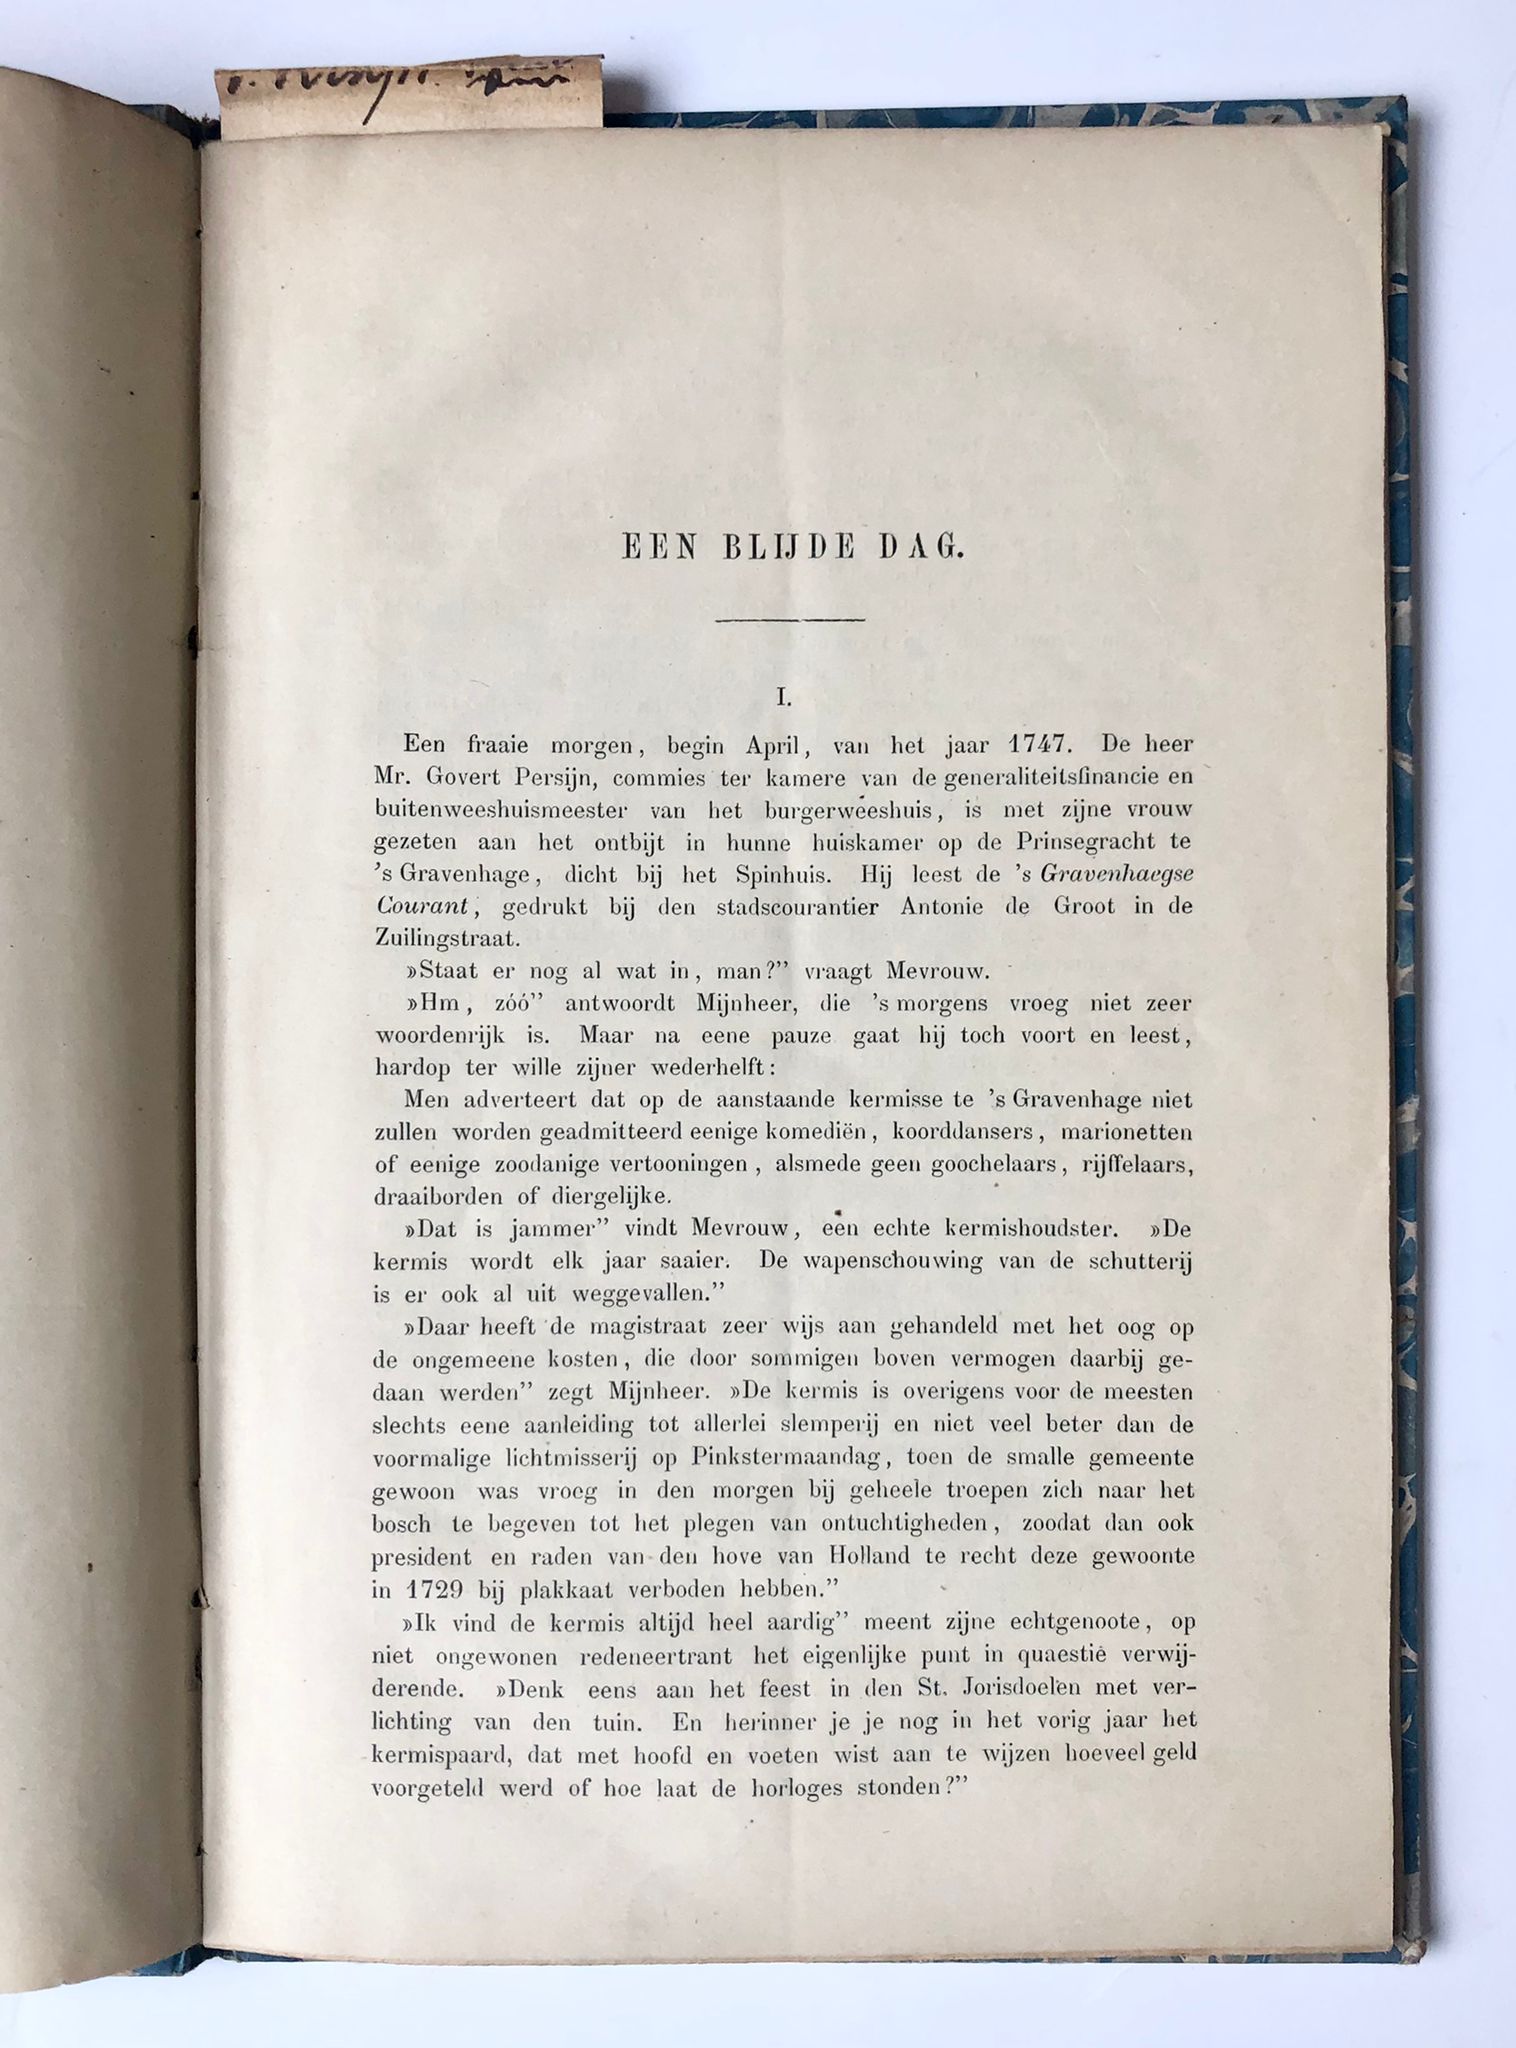 [History The Hague, 1894] Een blijde dag. 54 pp., printed (overdruk from De Tijdspiegel 1894). Decorated paper cardboard cover.